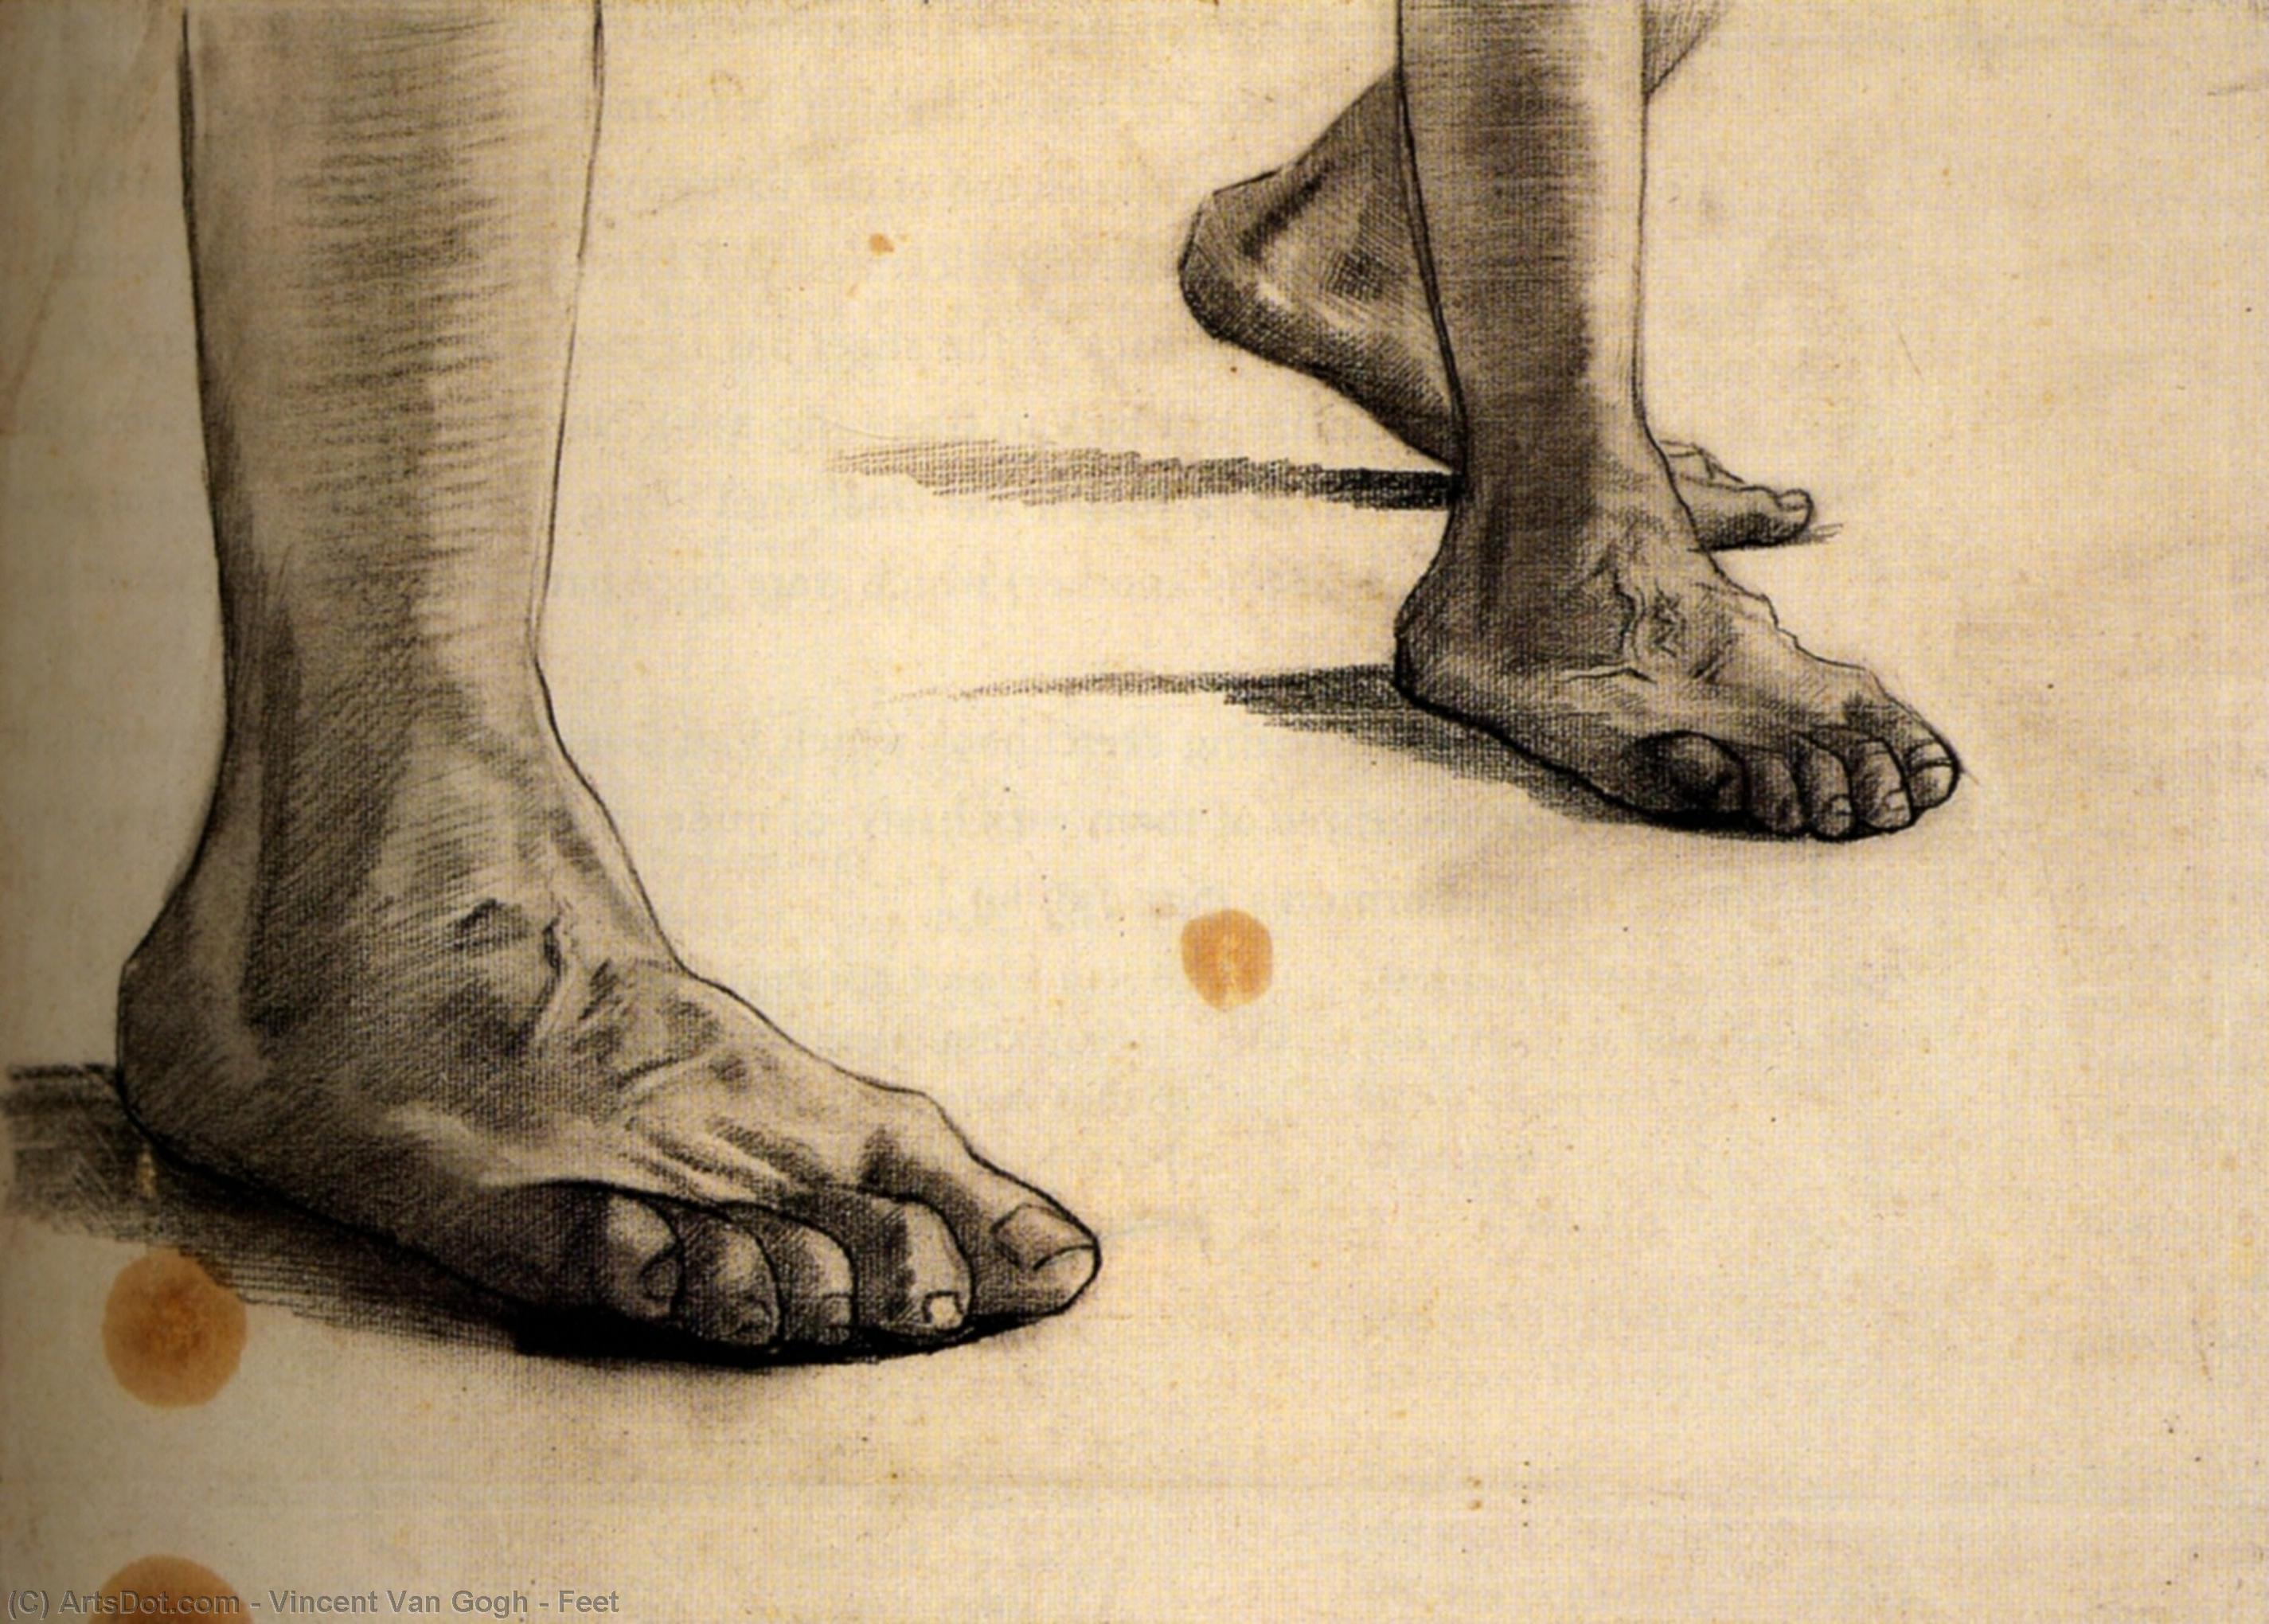 WikiOO.org - Εγκυκλοπαίδεια Καλών Τεχνών - Ζωγραφική, έργα τέχνης Vincent Van Gogh - Feet